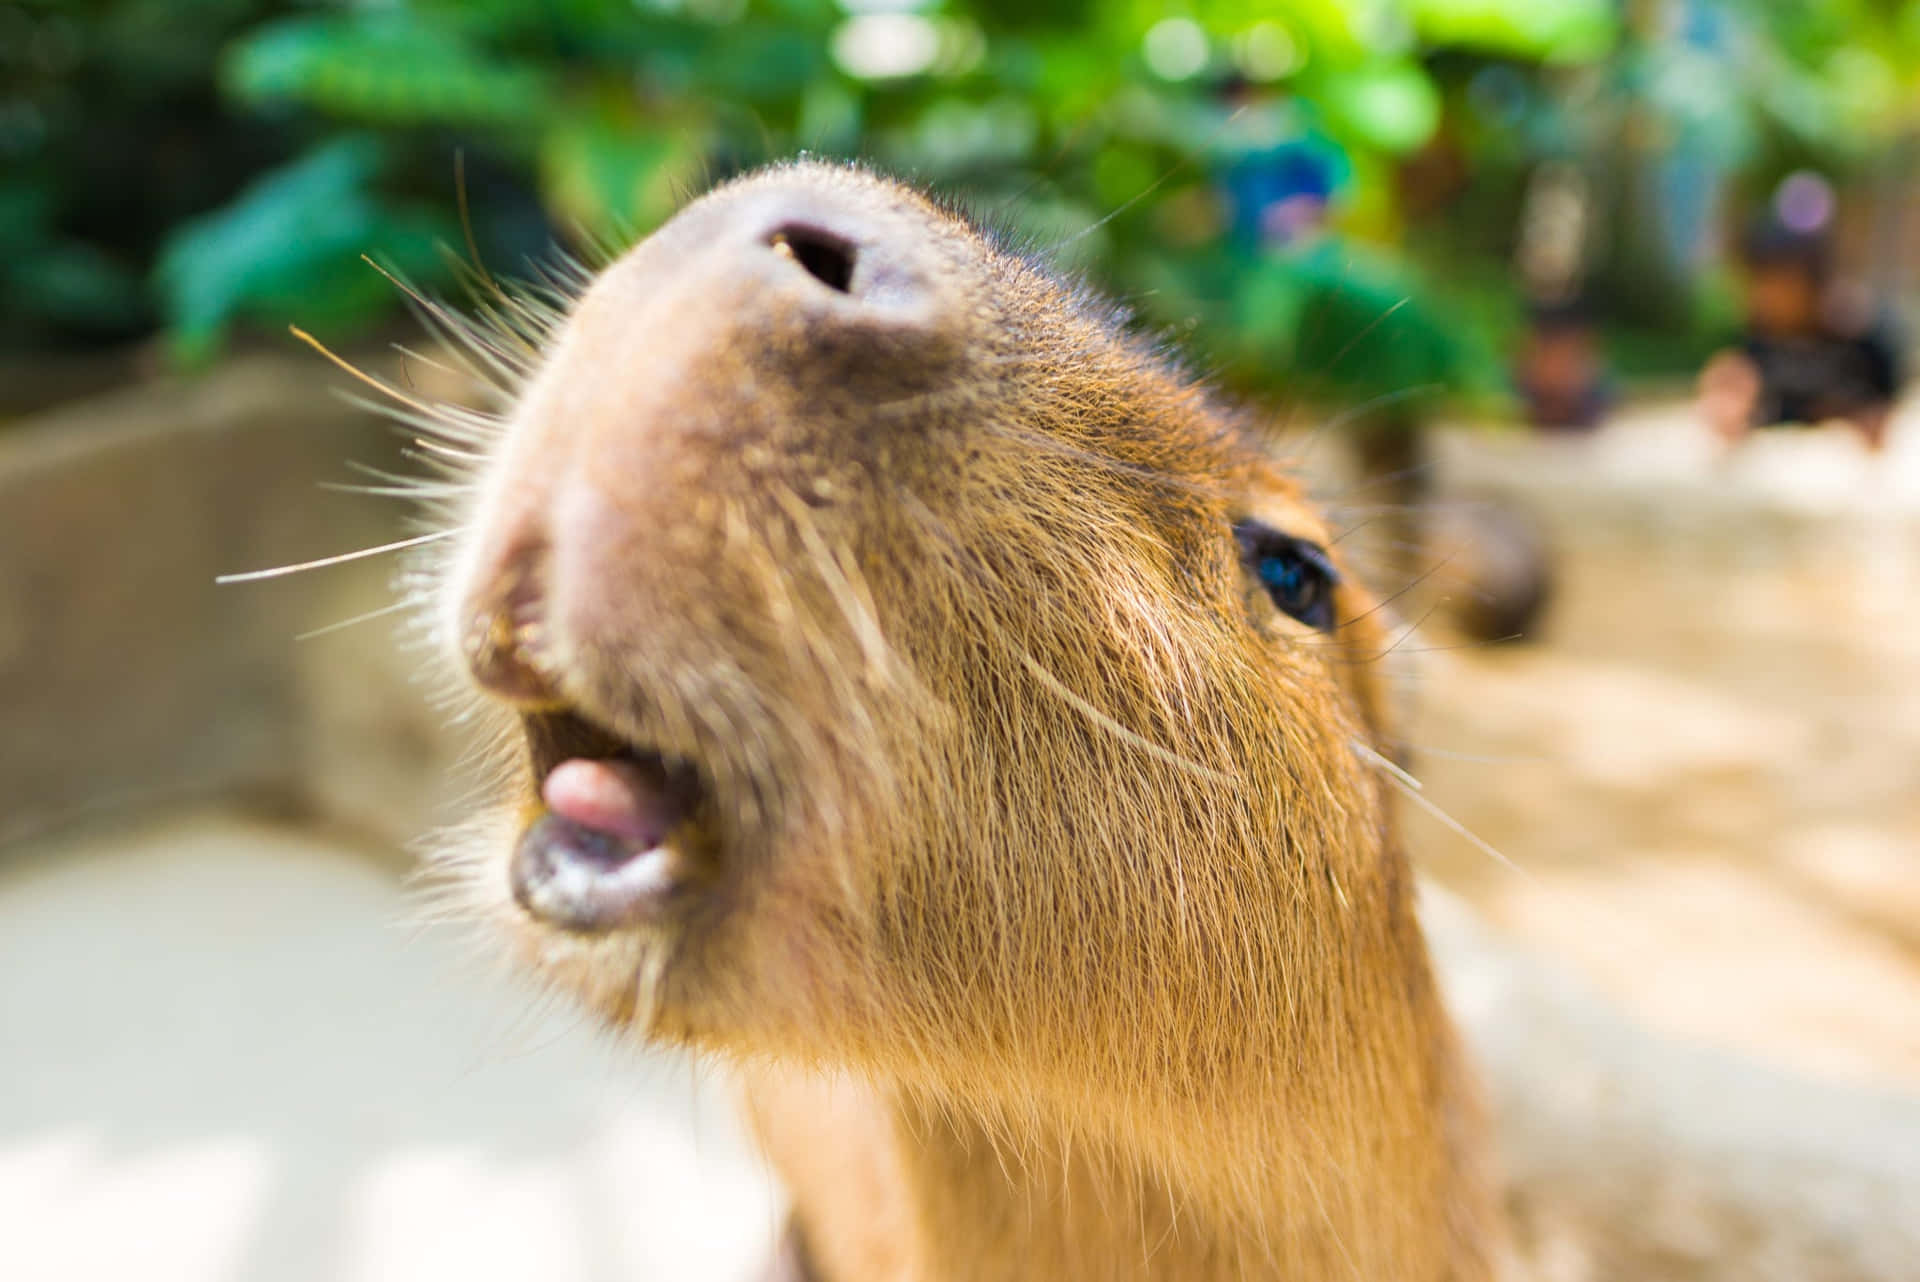 A Capybara Is Looking Up At The Camera